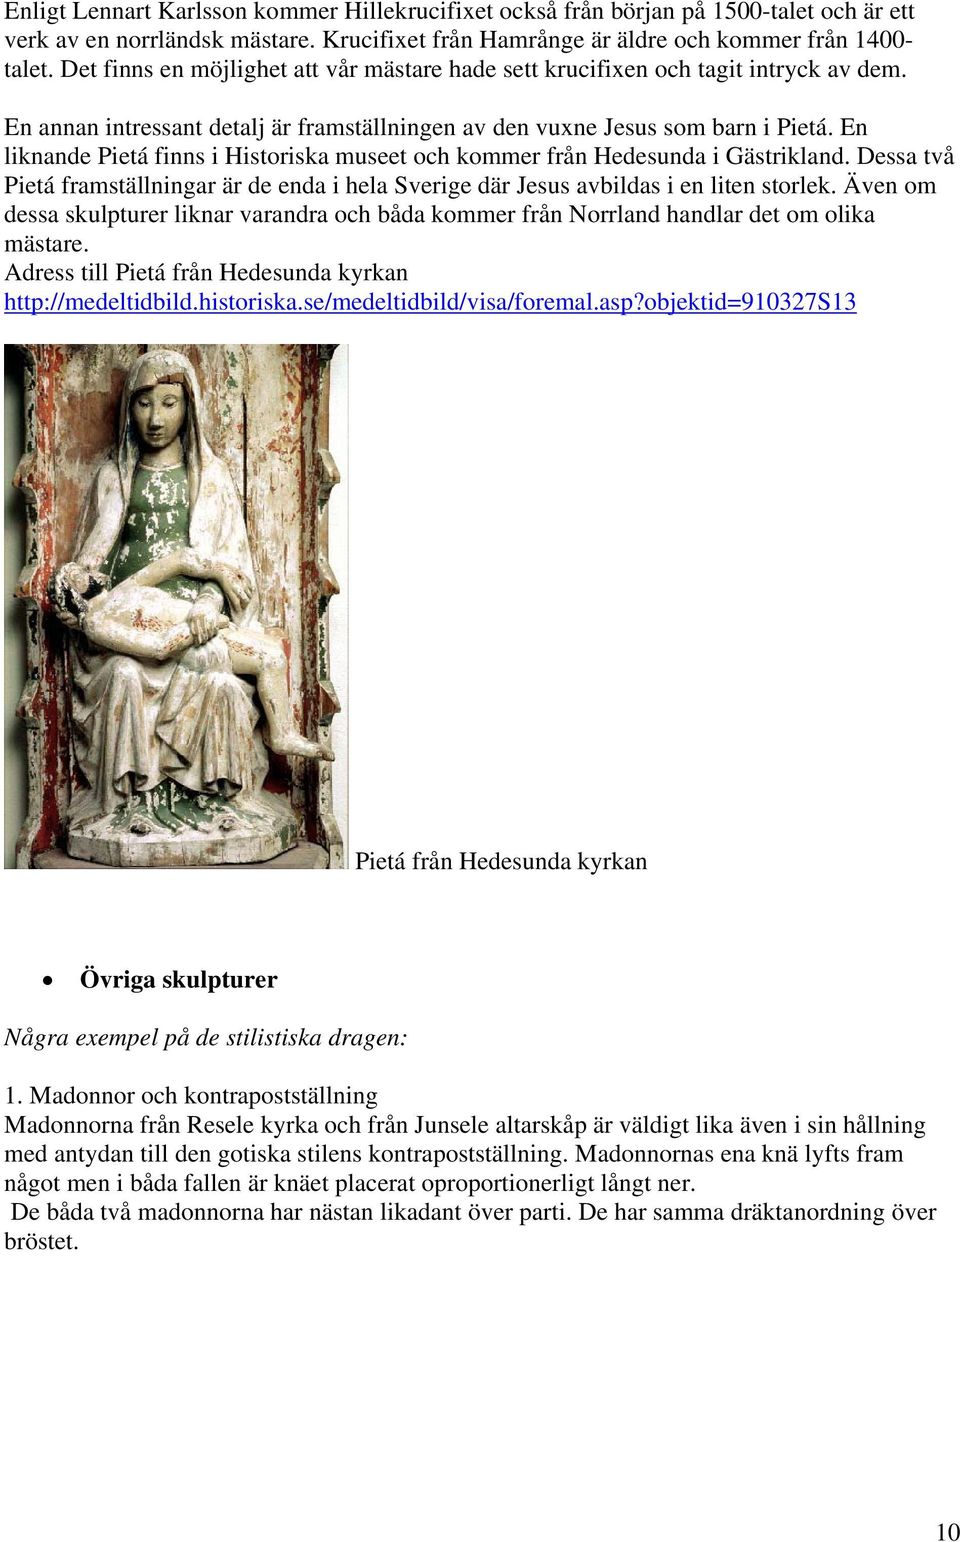 En liknande Pietá finns i Historiska museet och kommer från Hedesunda i Gästrikland. Dessa två Pietá framställningar är de enda i hela Sverige där Jesus avbildas i en liten storlek.